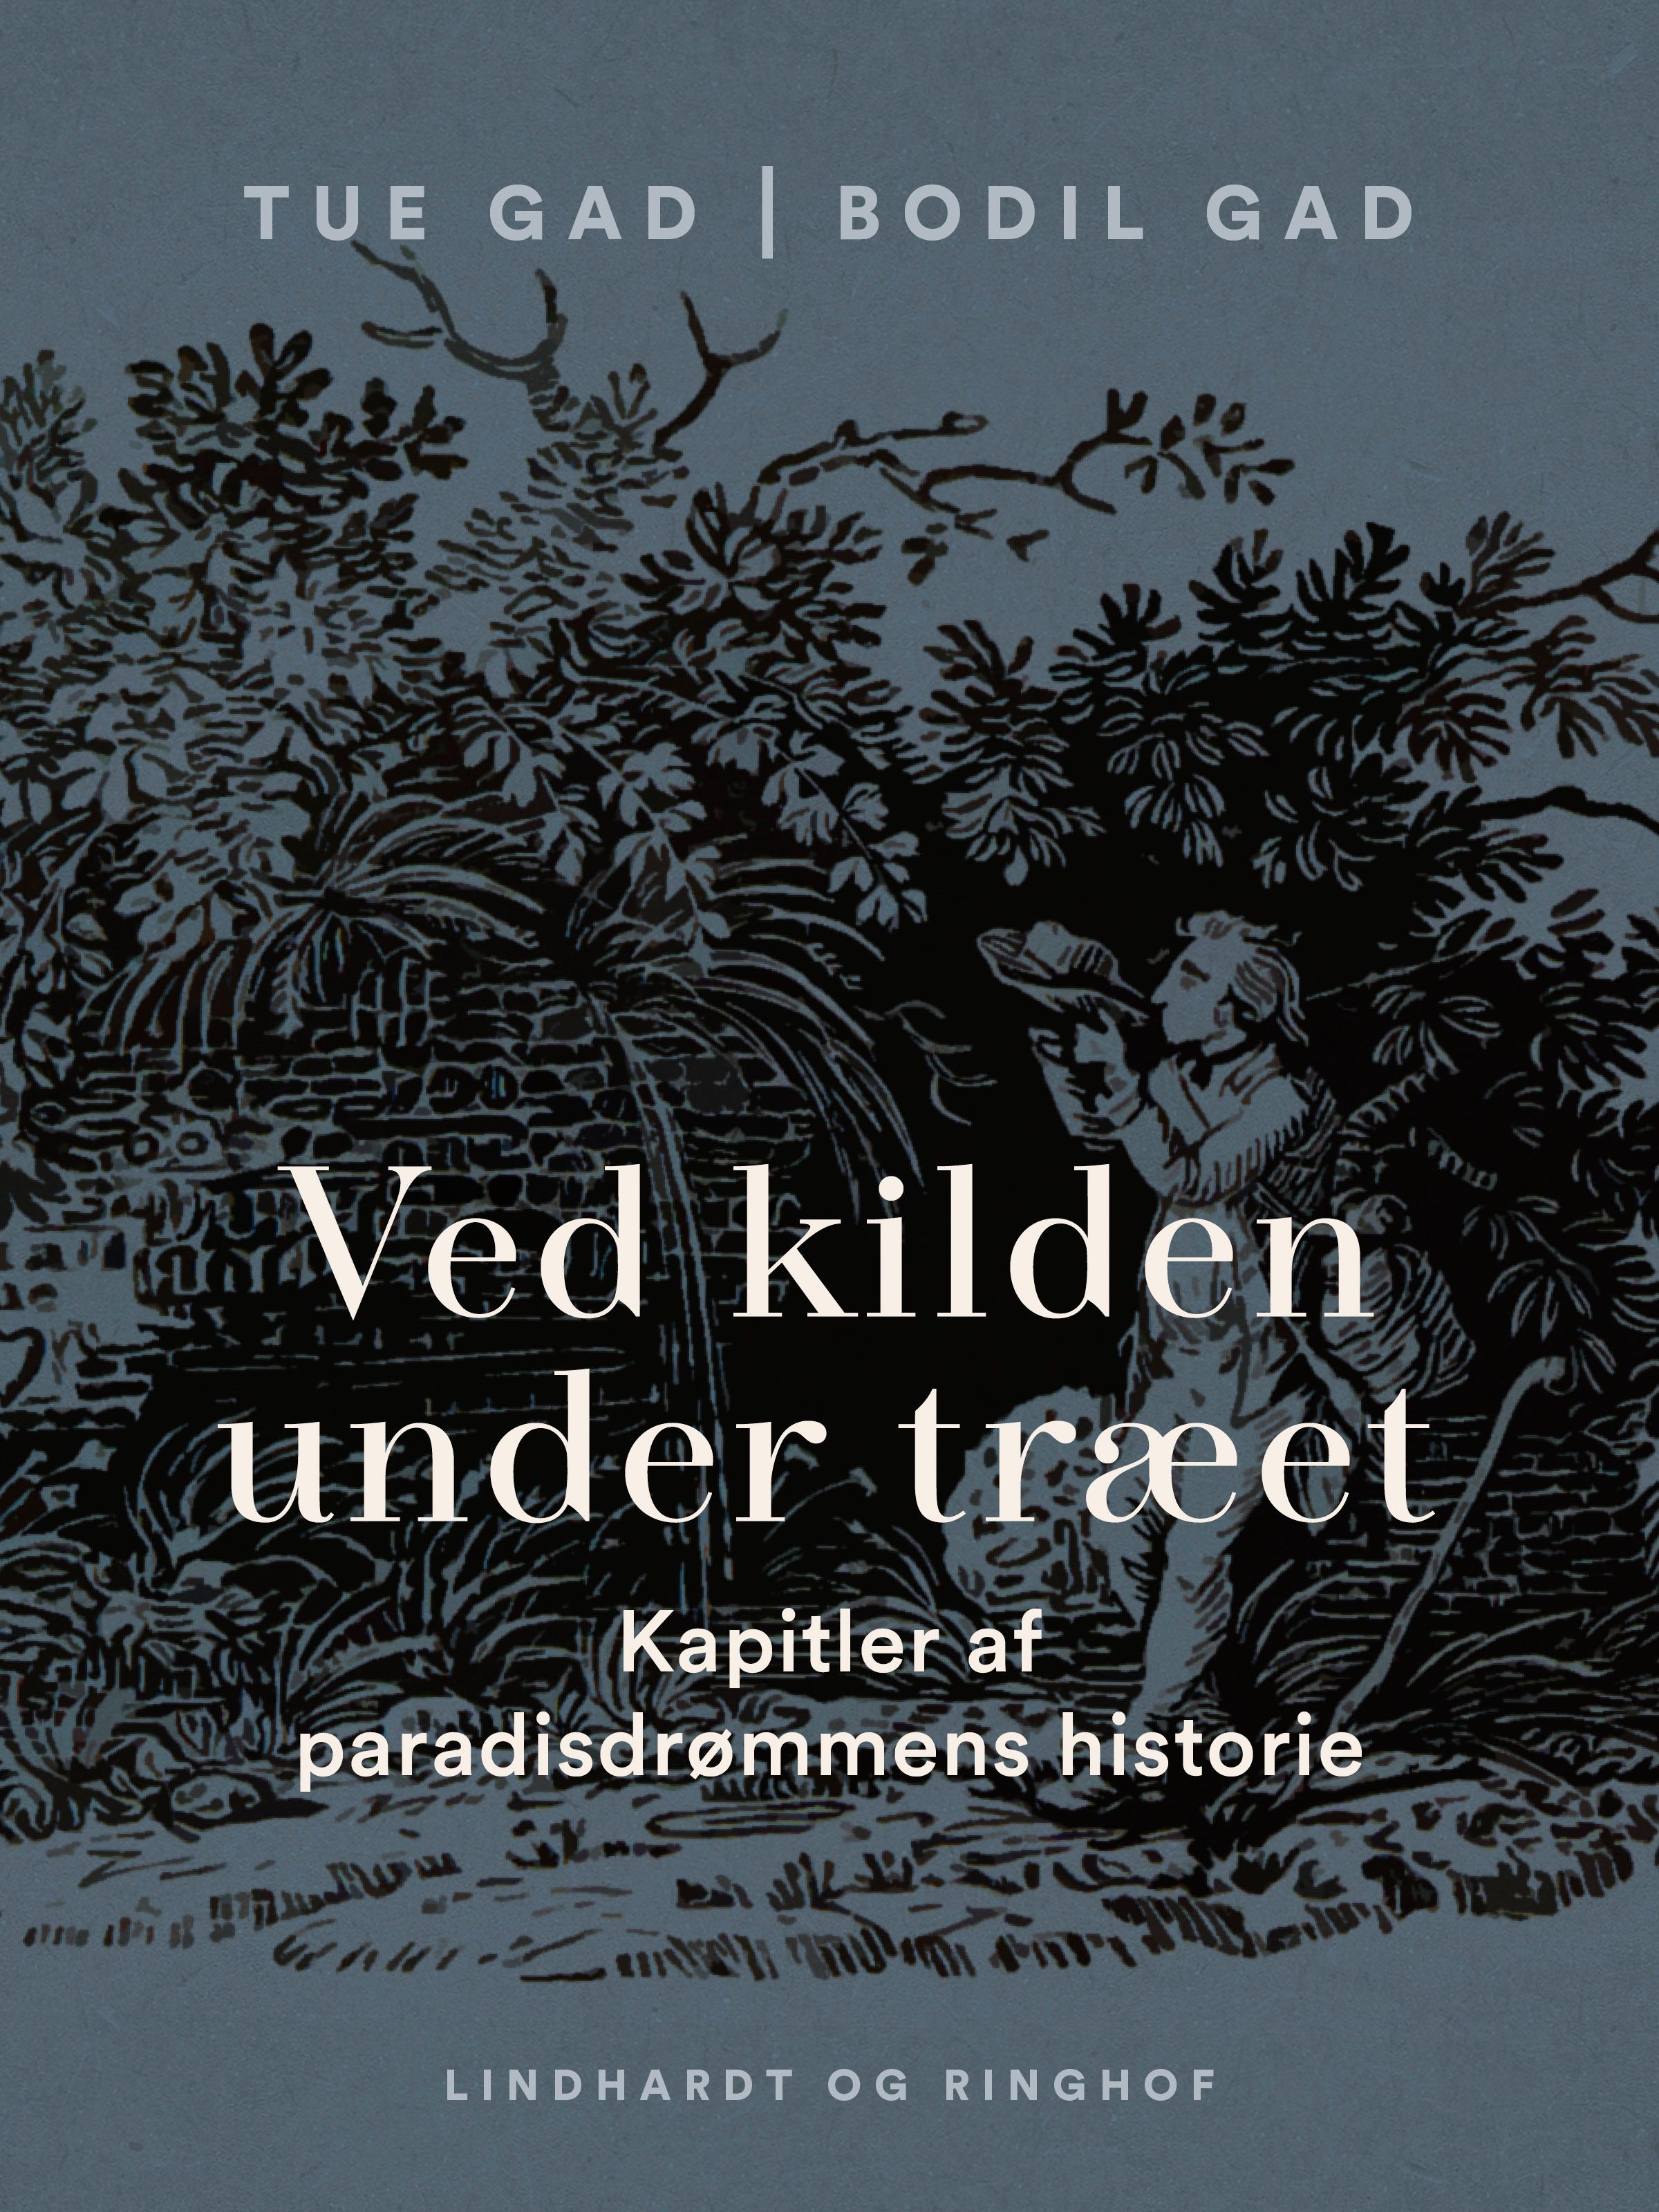 Ved kilden under træet. Kapitler af paradisdrømmens historie, e-bog af Bodil Gad, Tue Gad